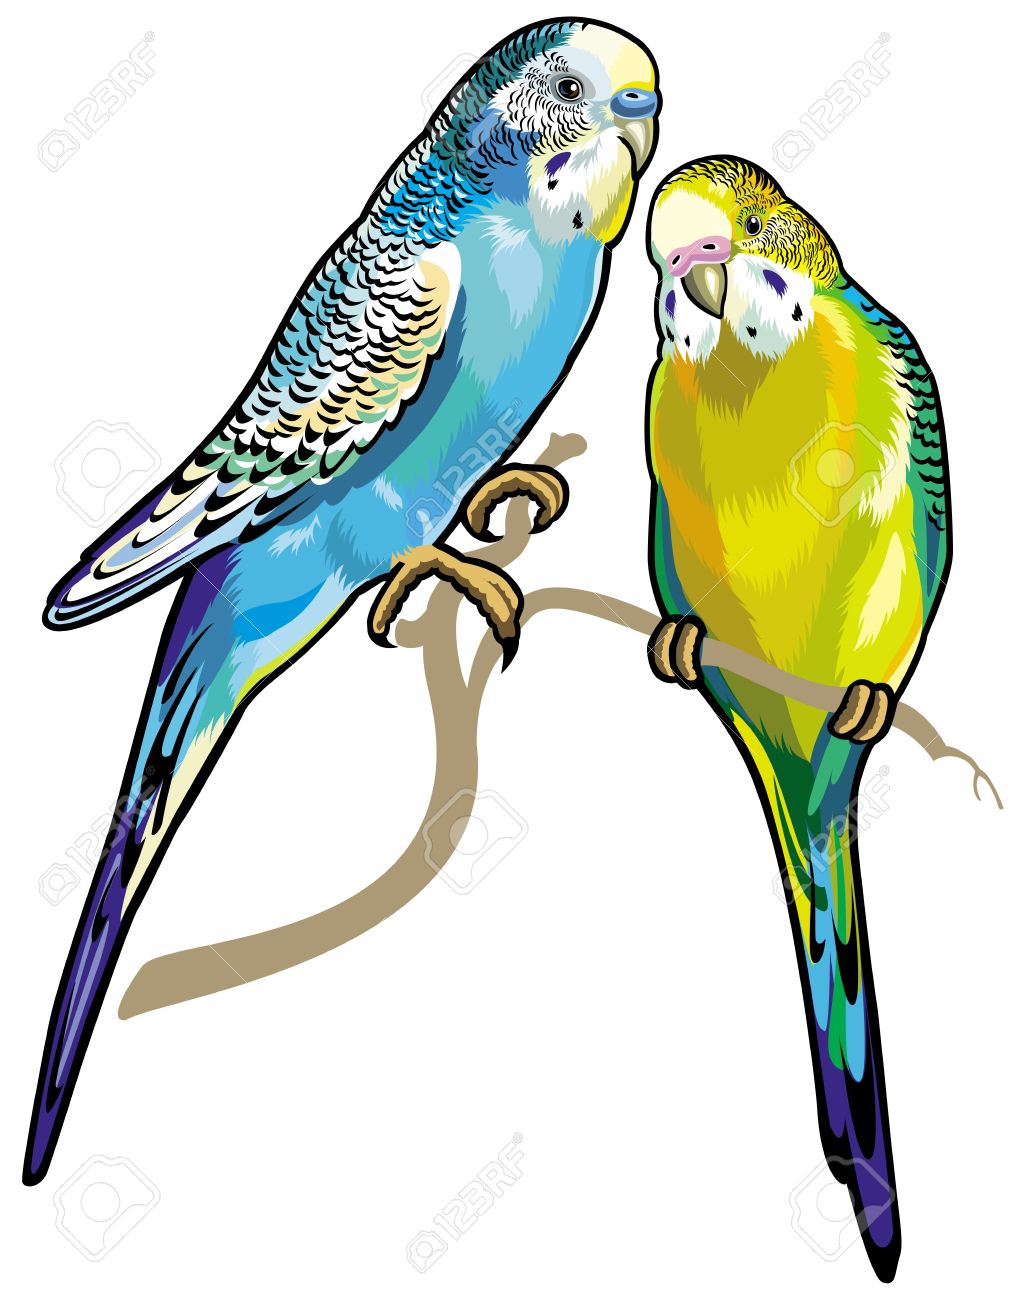 budgie: budgerigars australian parakeets isolated on white background Illustration